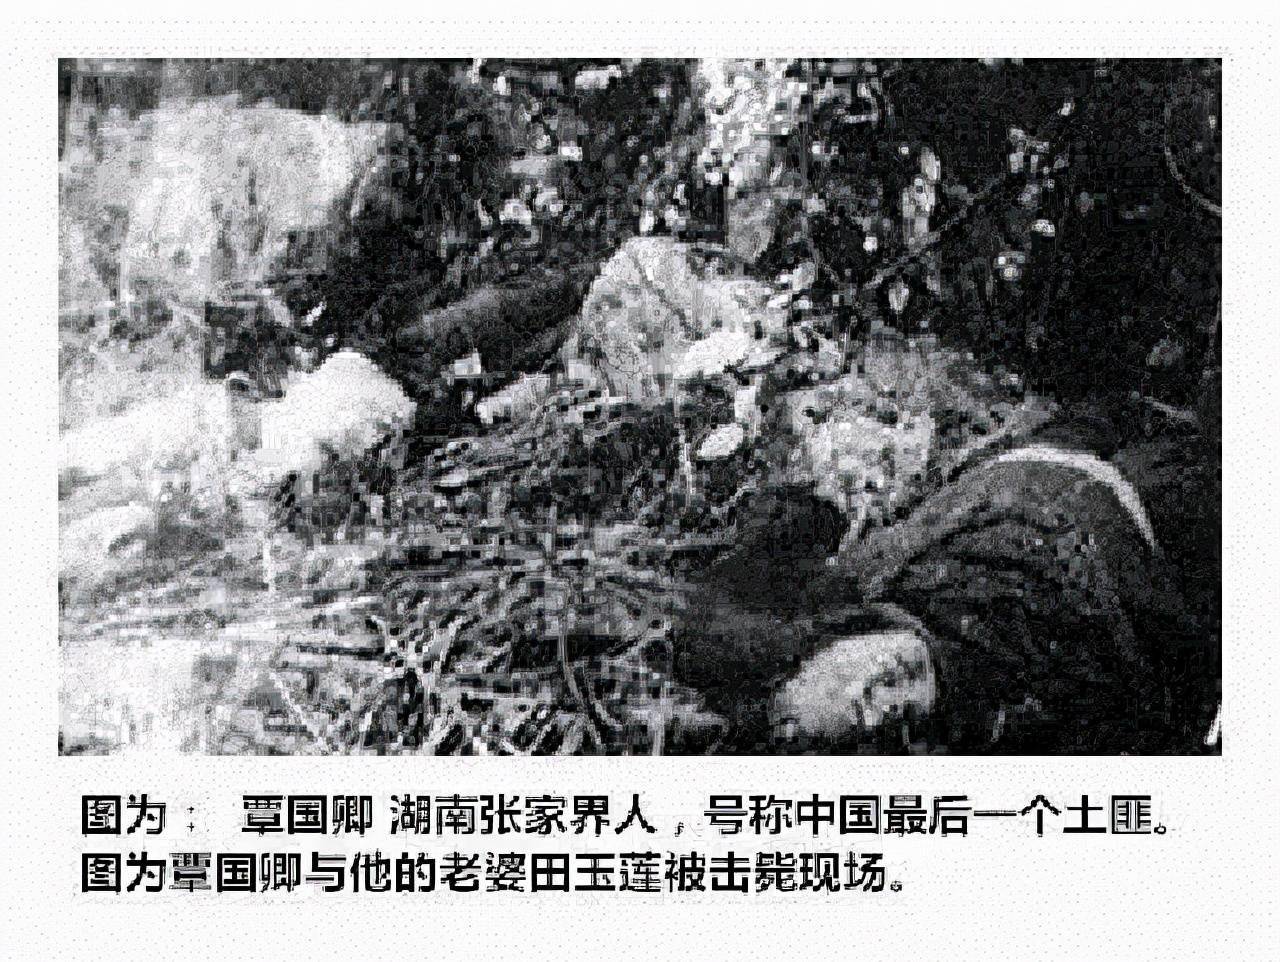 新中国最后一个土匪,作恶多端掐死自己5个子女,万人围剿终灭亡